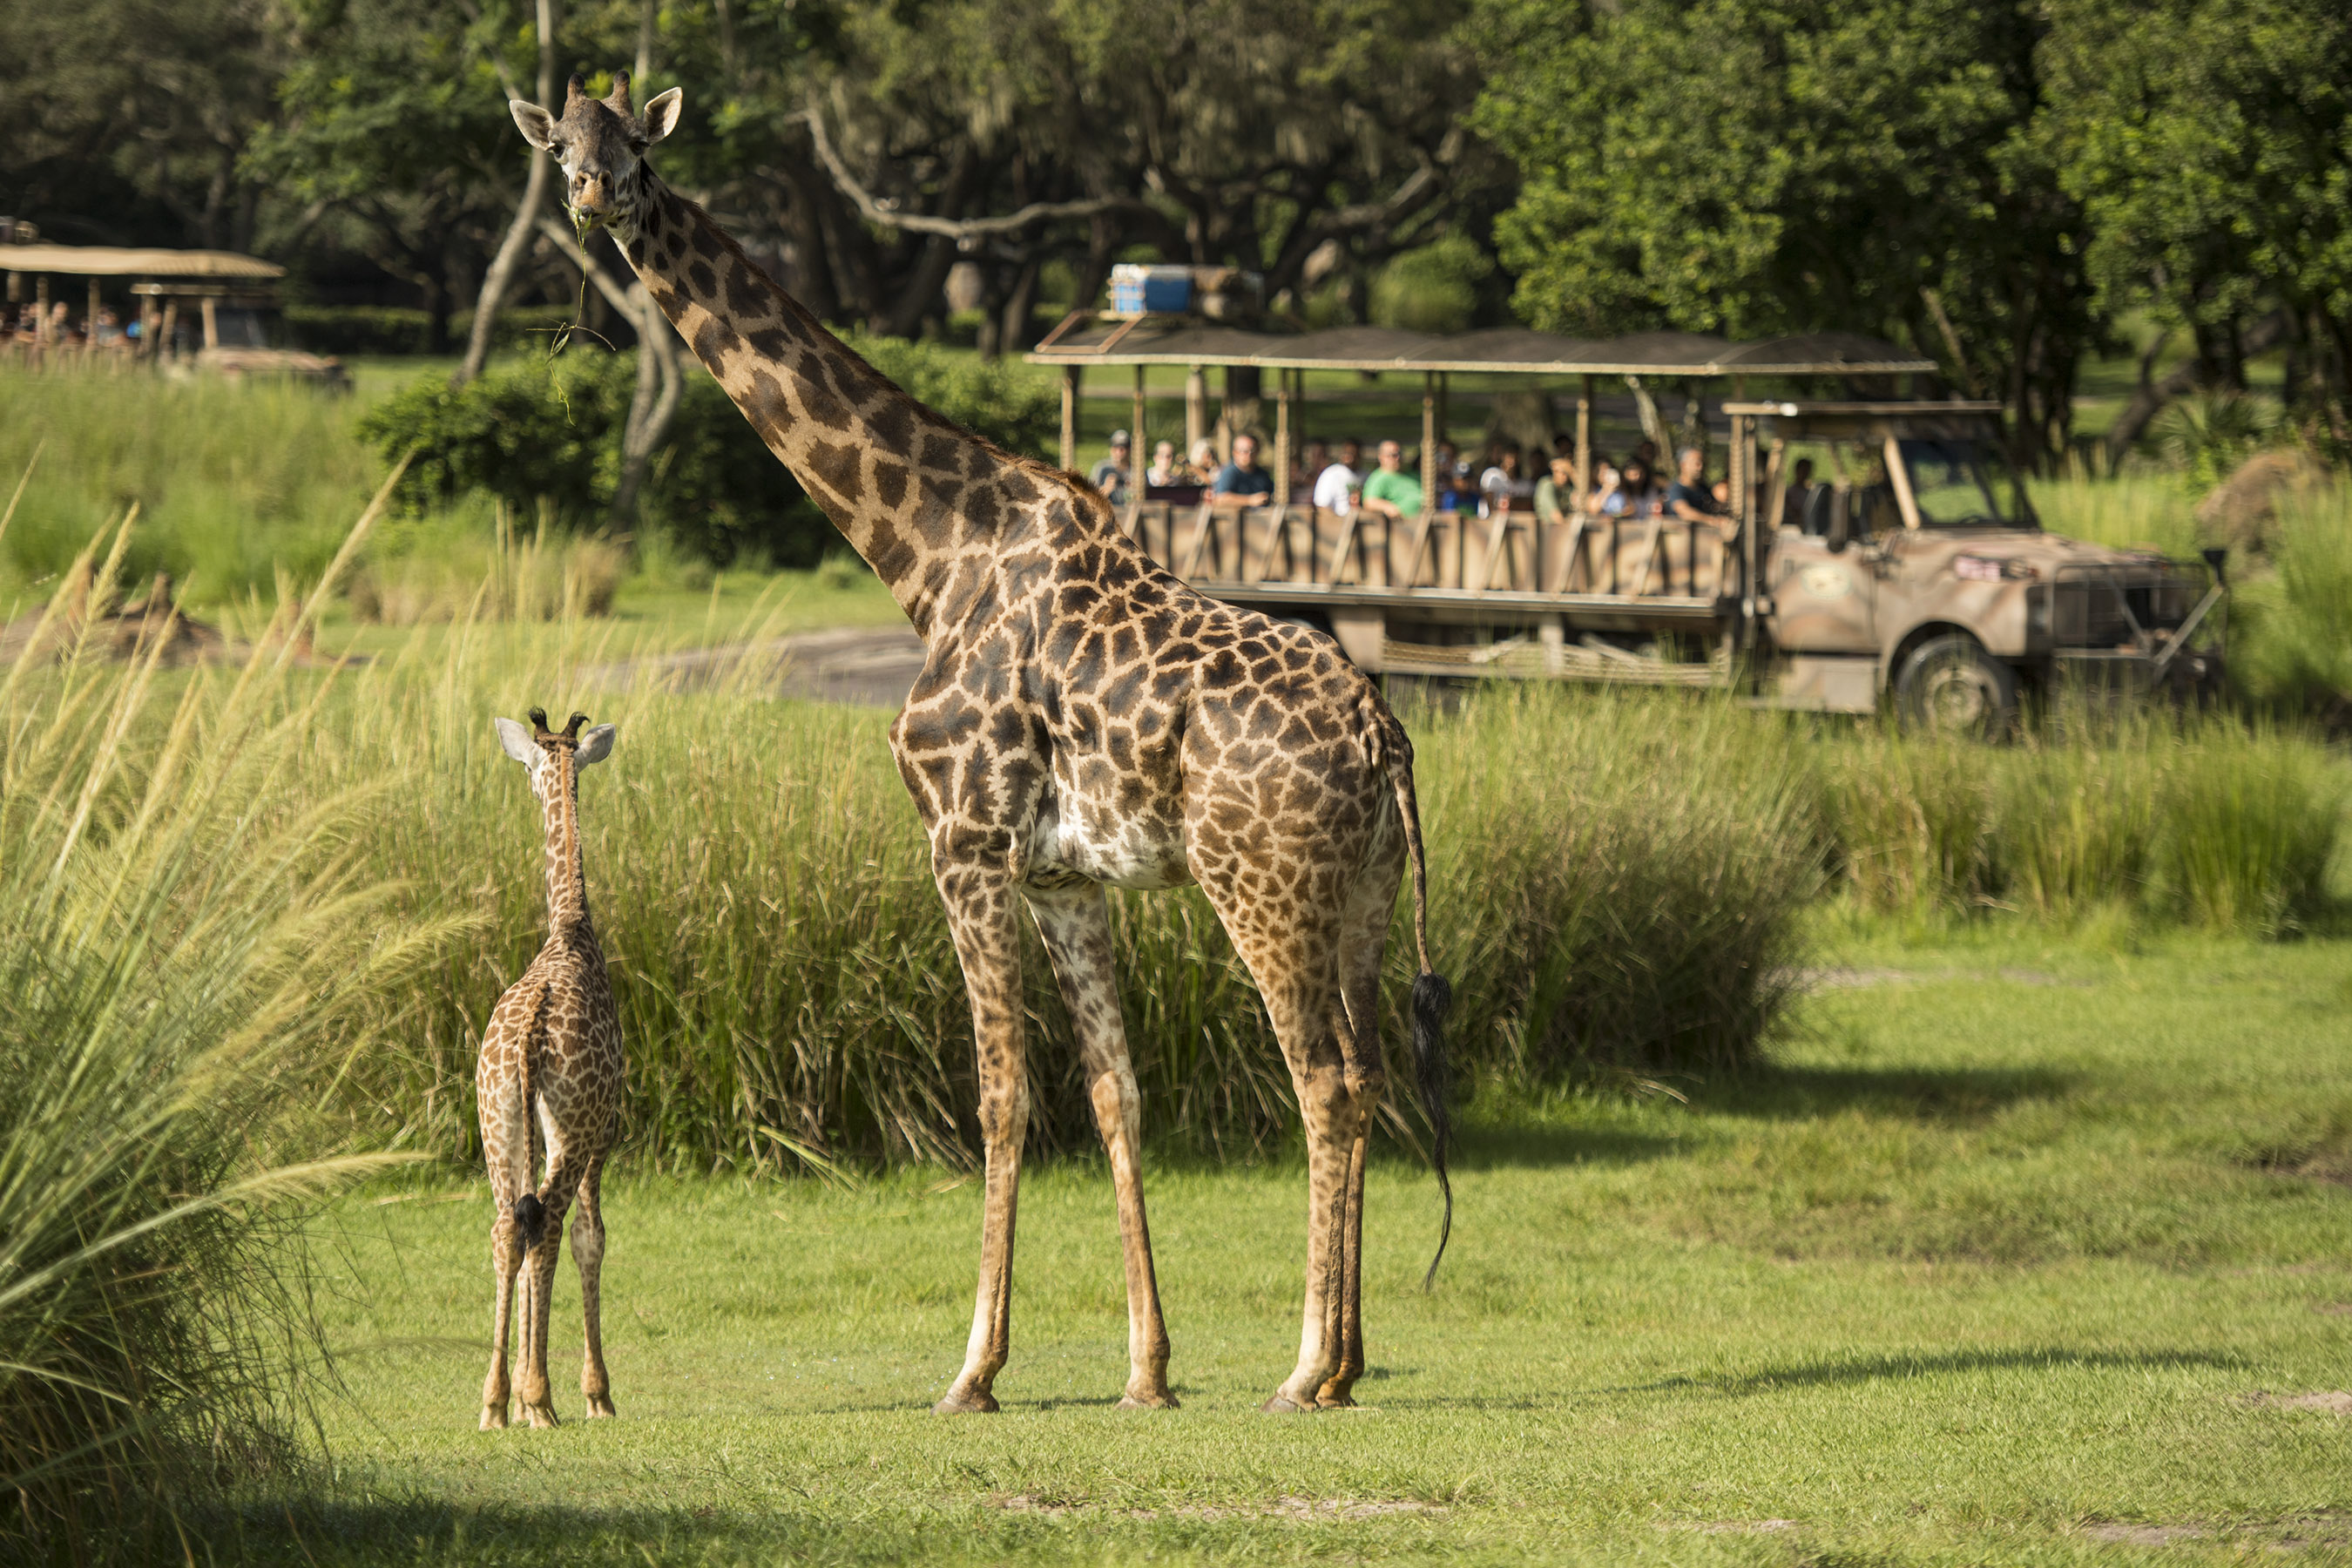 New Baby Giraffe Makes Debut in Kilimanjaro Safaris at Disney’s Animal Kingdom